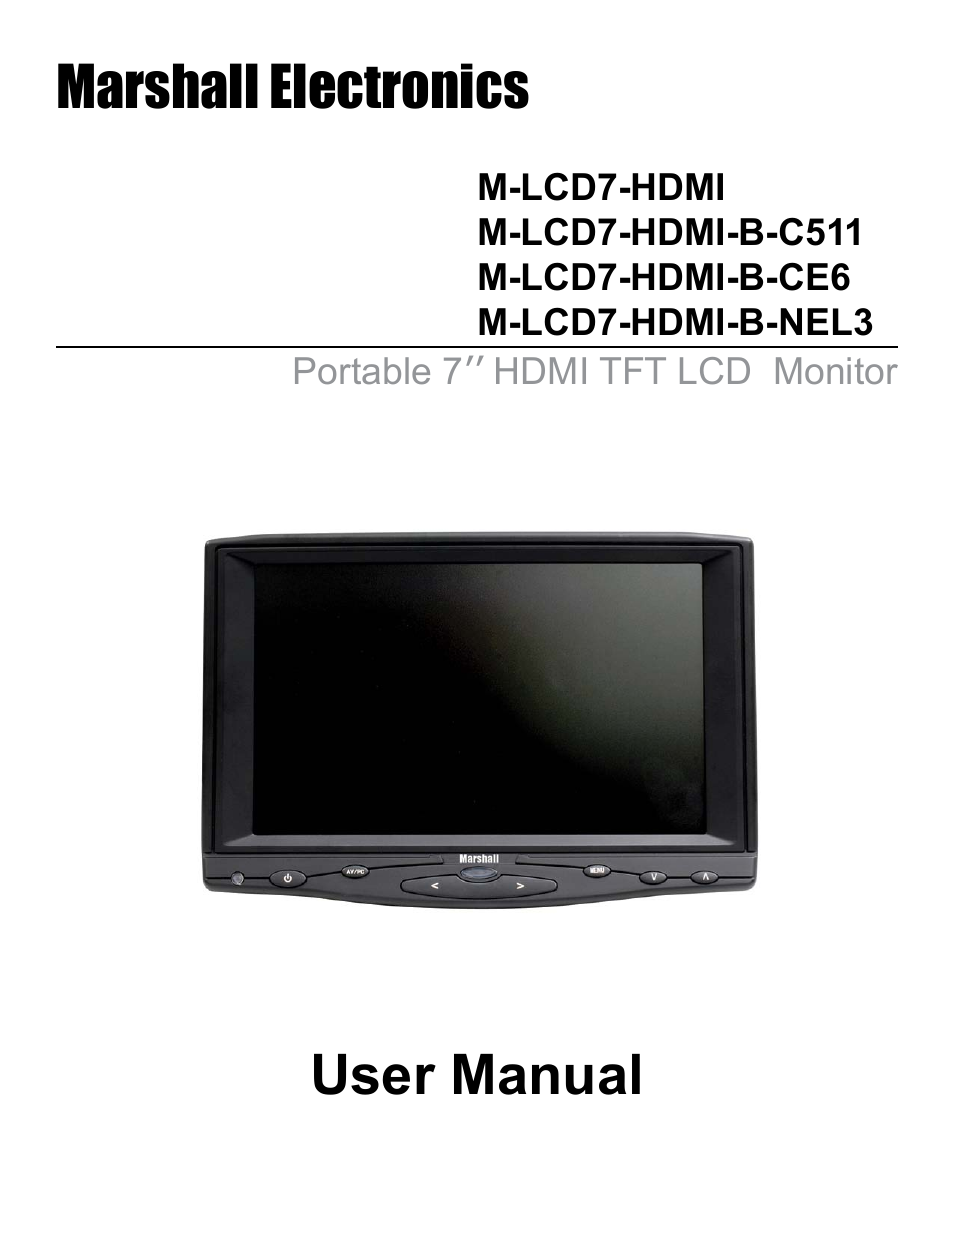 M-LCD7-HDMI-B-CE6